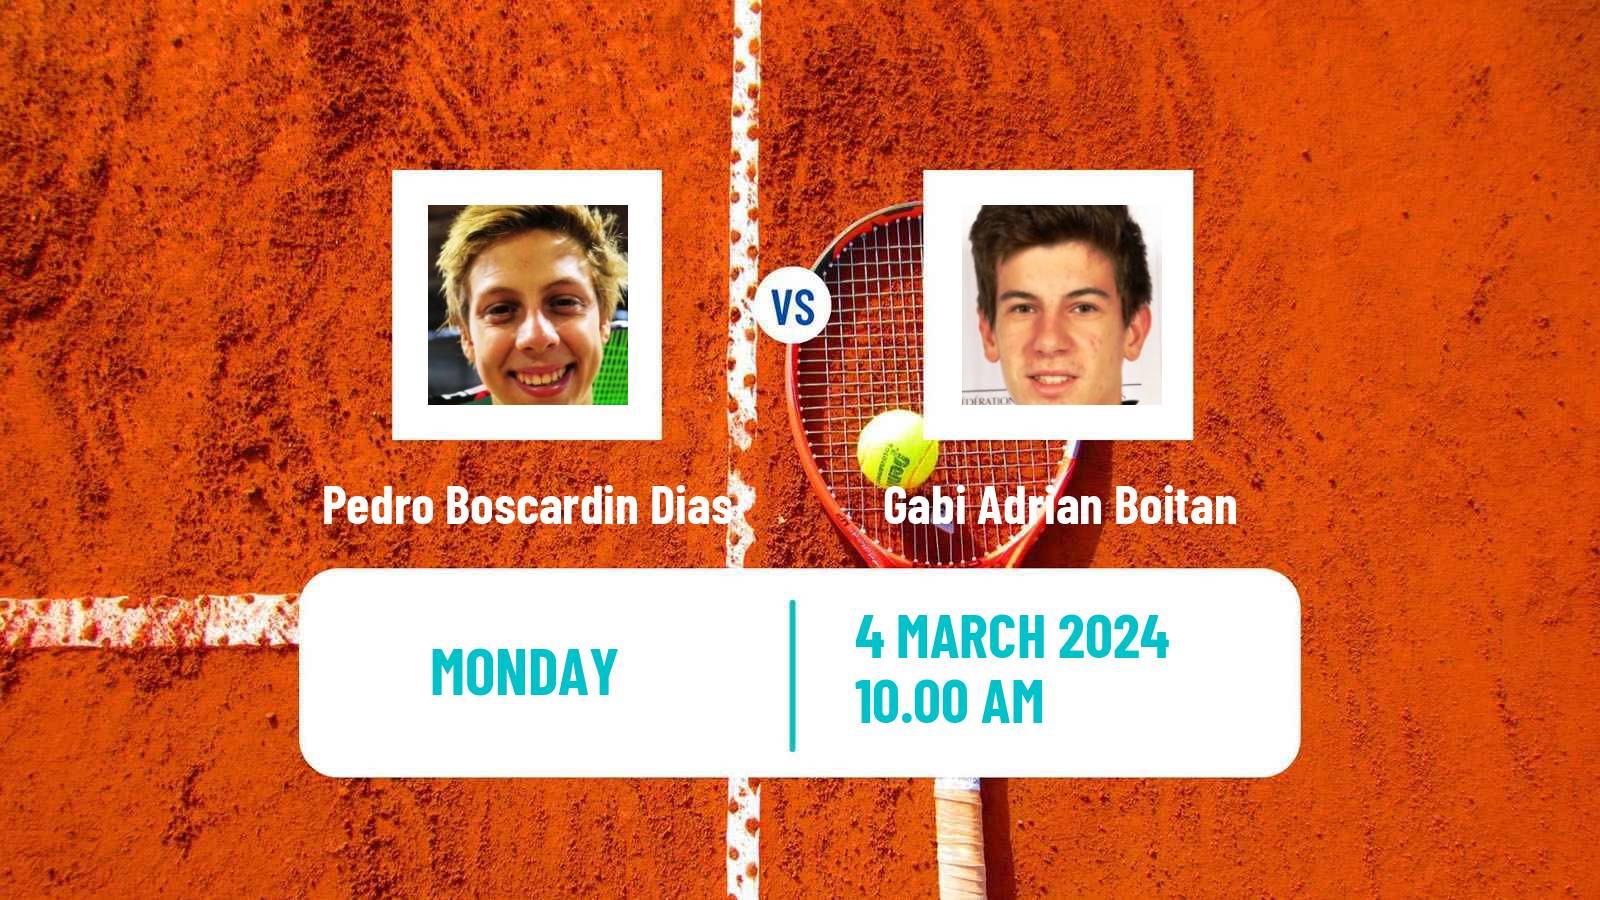 Tennis Santa Cruz Challenger Men Pedro Boscardin Dias - Gabi Adrian Boitan